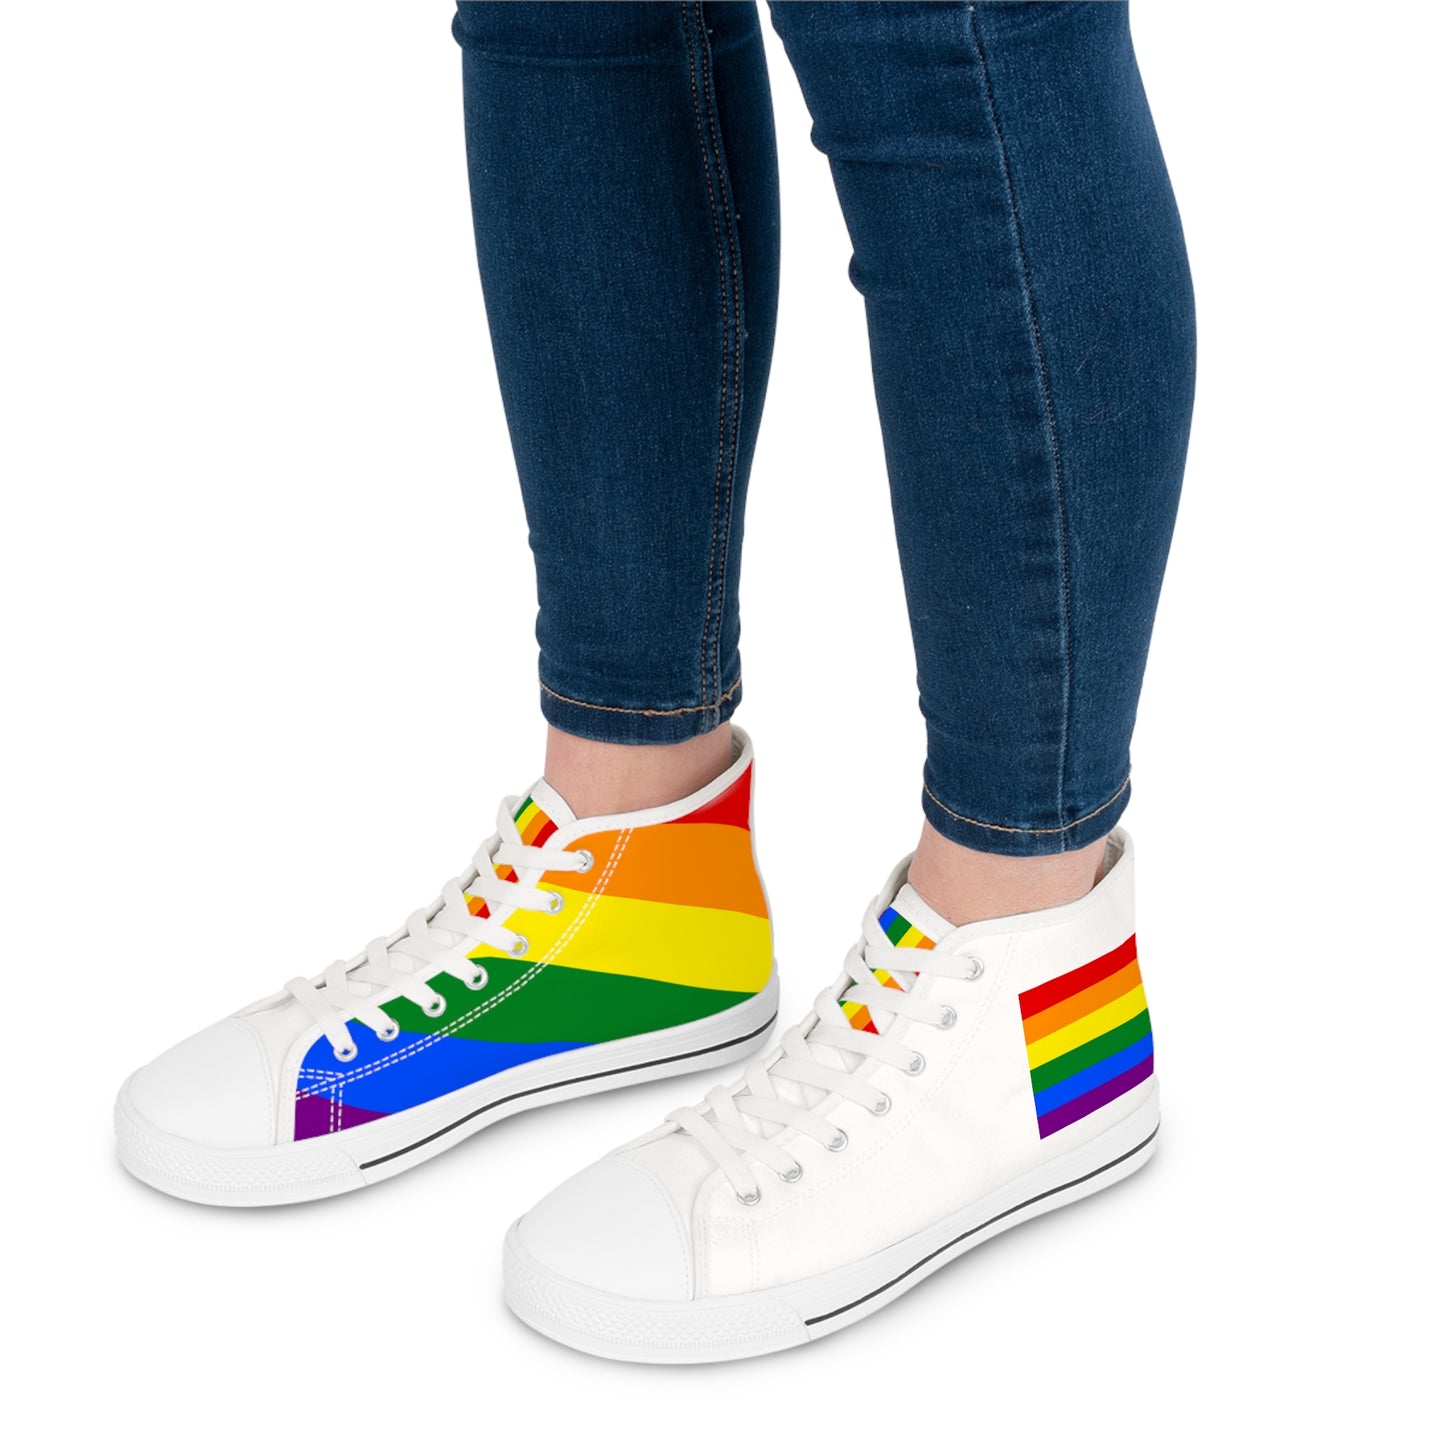 Zapatillas mujer caña alta tipo Converse / LGBTQ